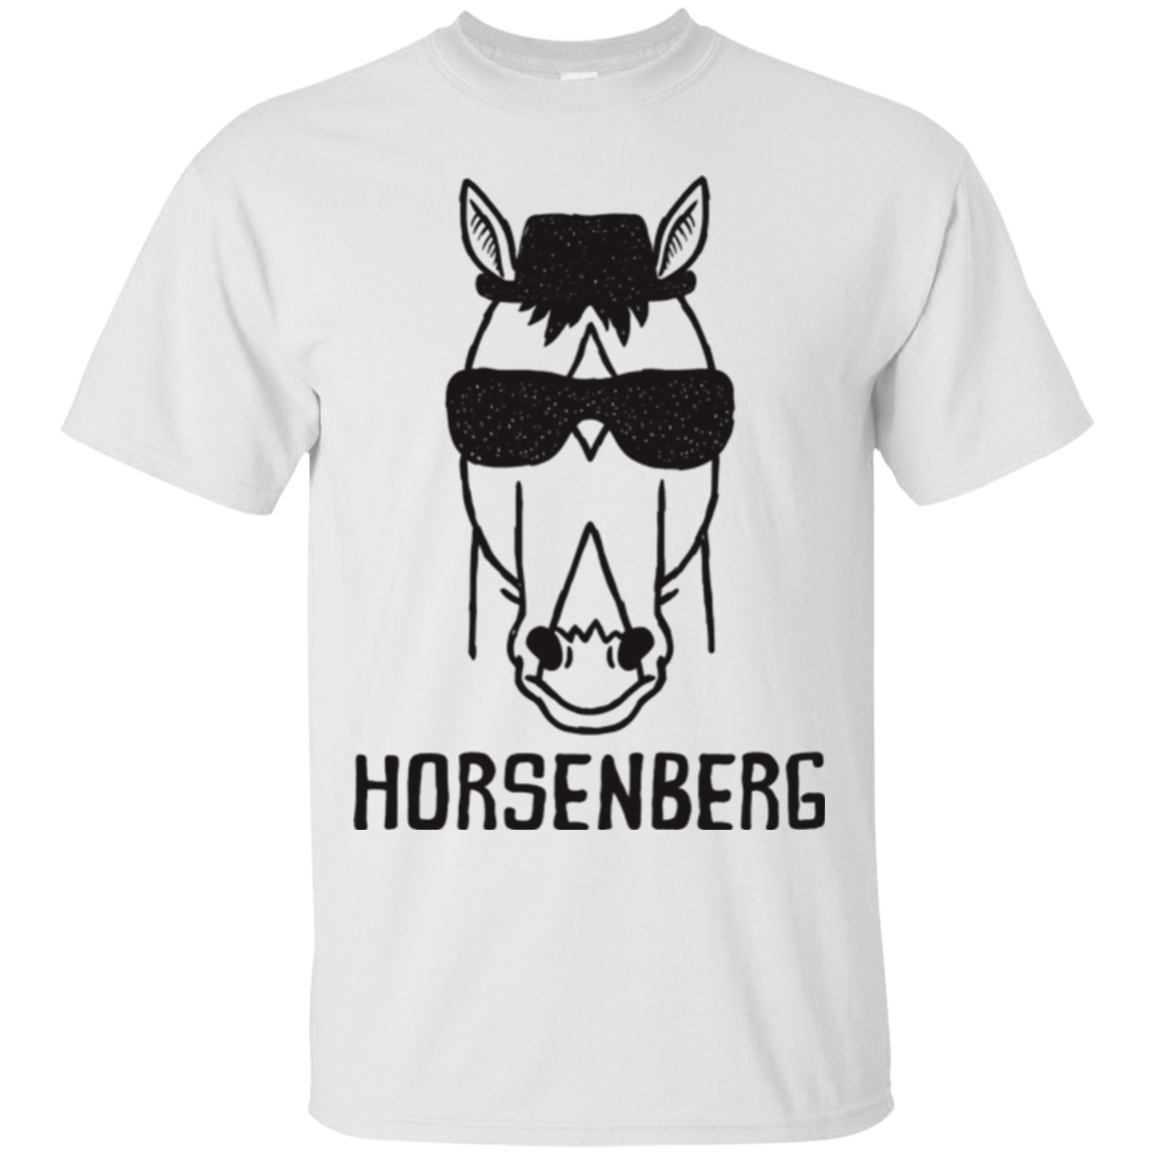 Horsenberg T-Shirt